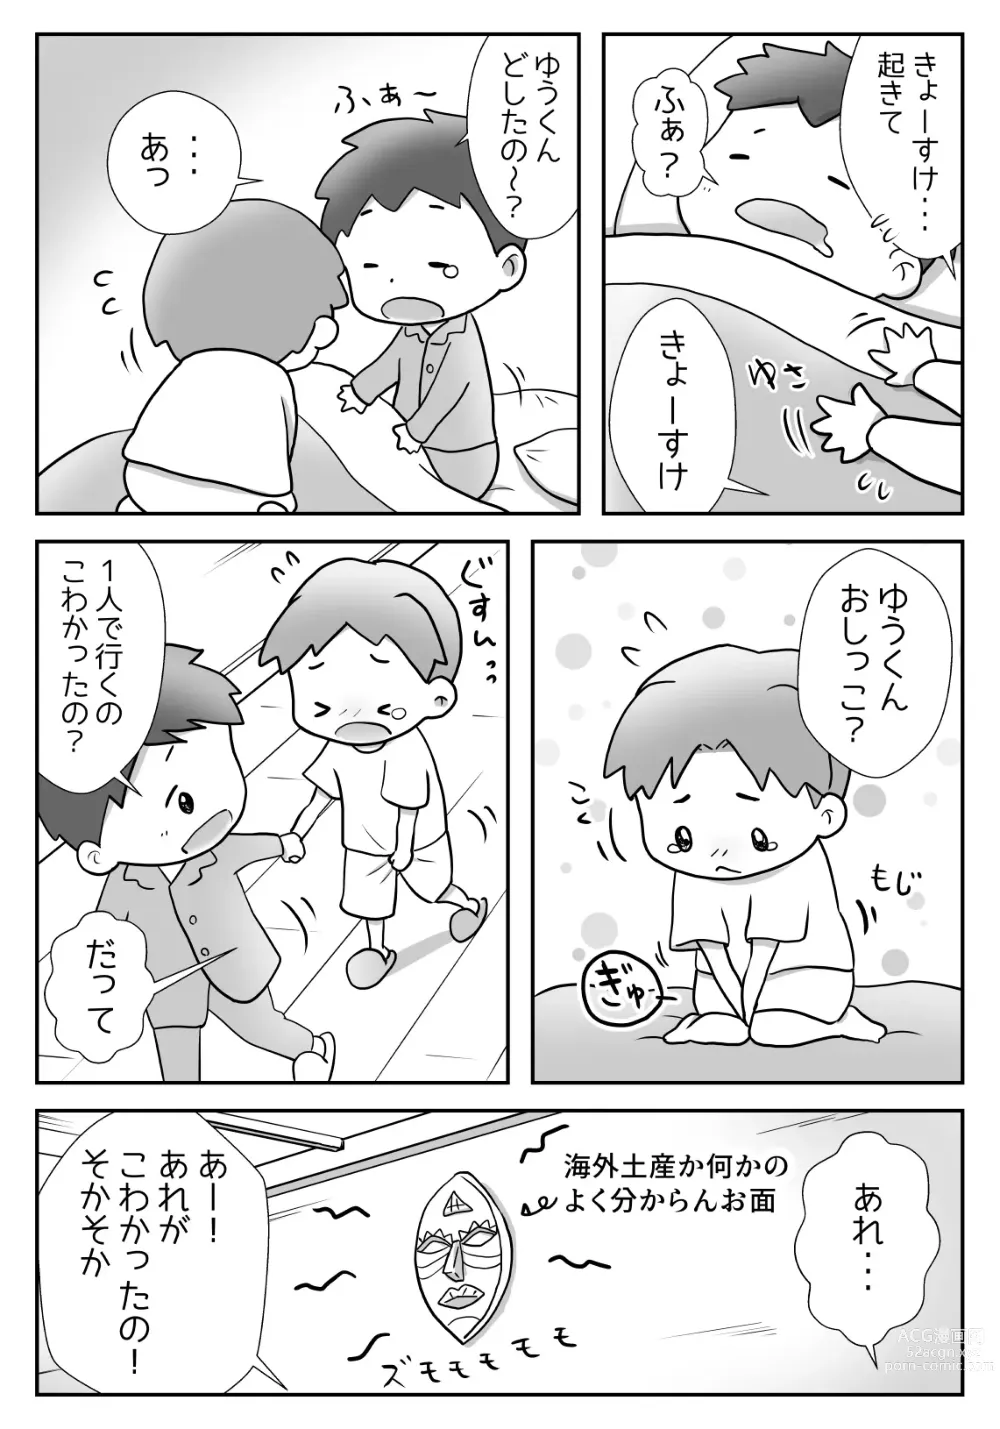 Page 5 of doujinshi Yuu-kun to Kyousuke 2